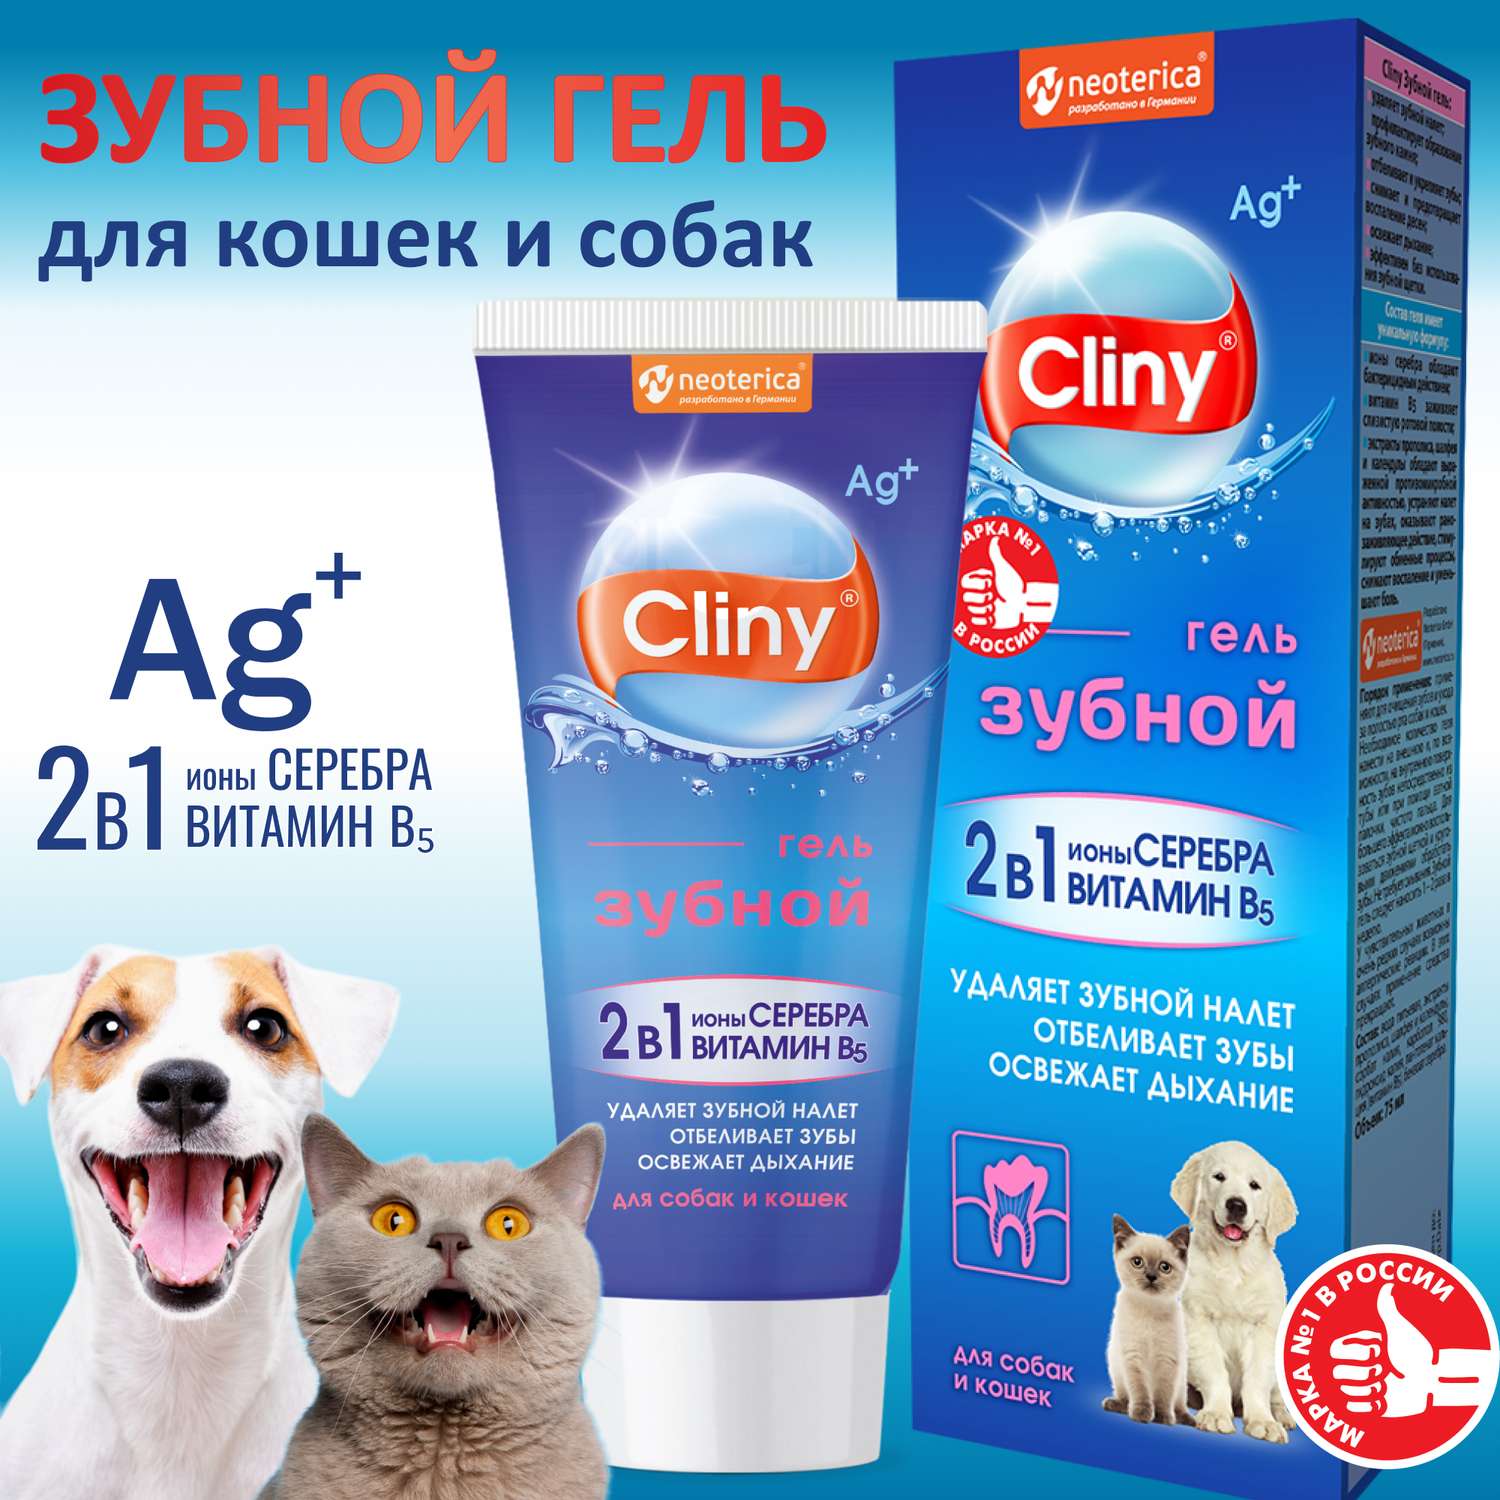 Гель зубной гель для кошек и собак Cliny 75мл 53260 - фото 6